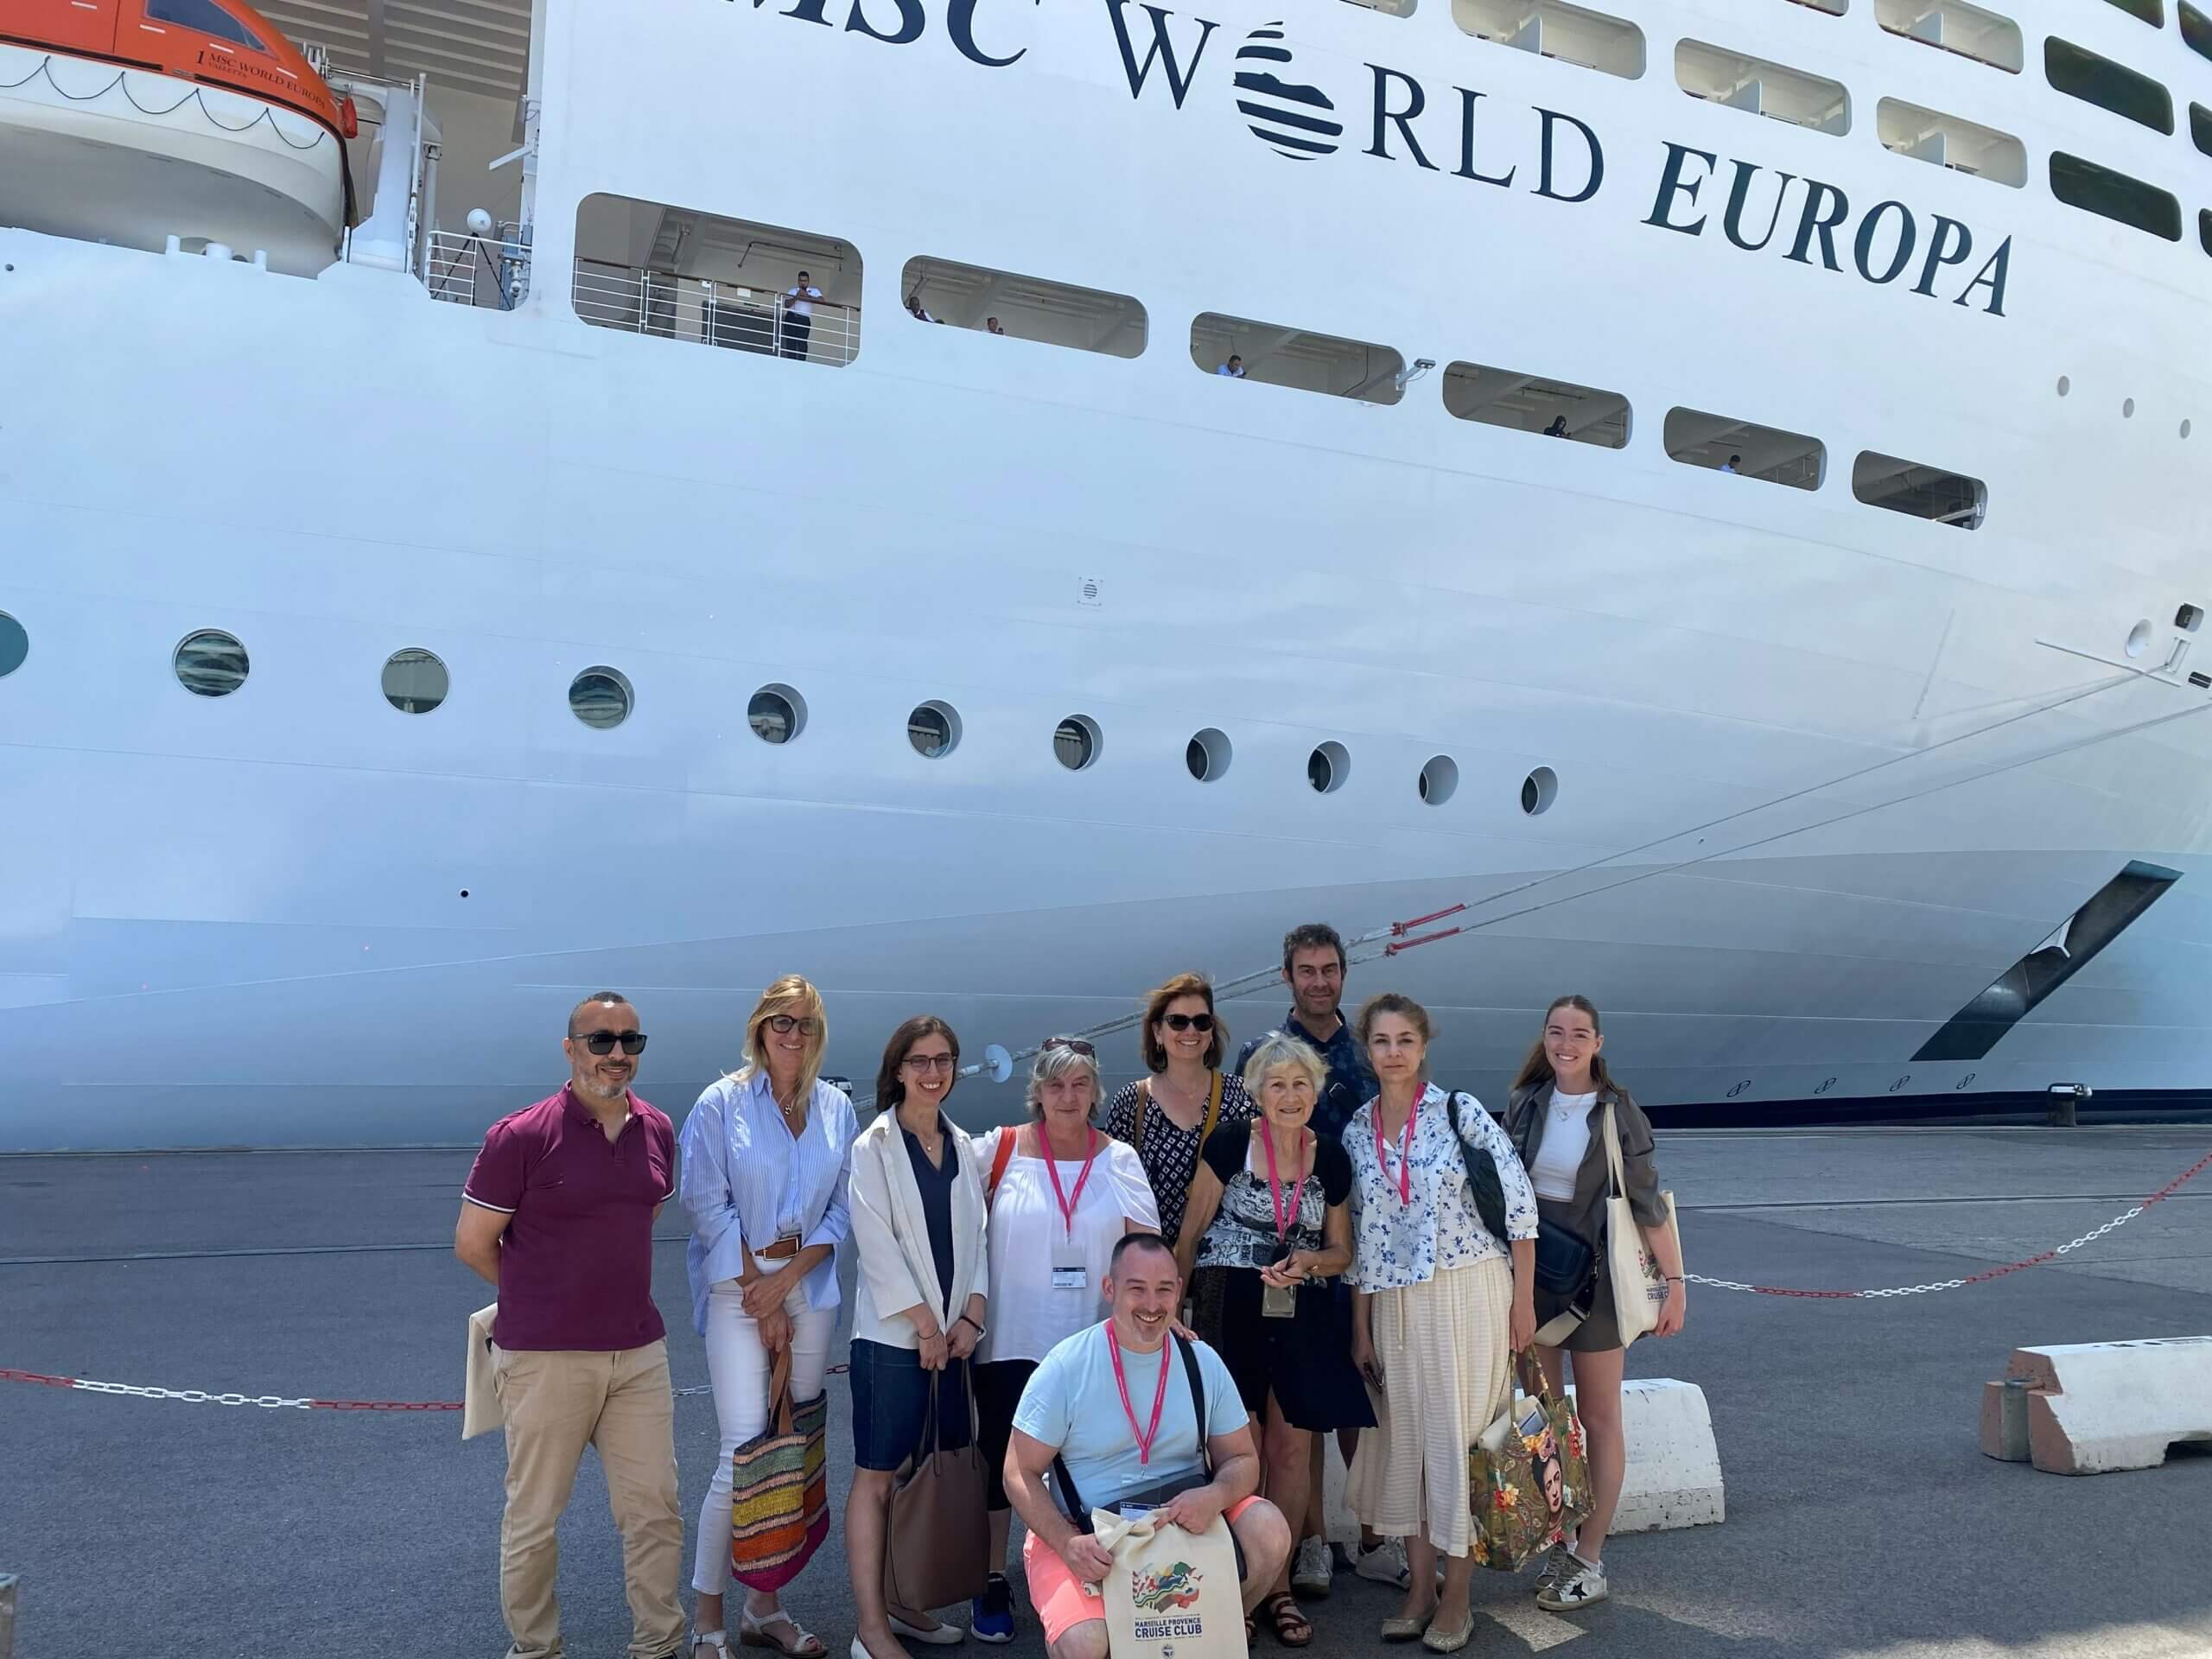 paquebot croisière World Europa groupe visite gagnants jeu concours quai terminal mer blanc